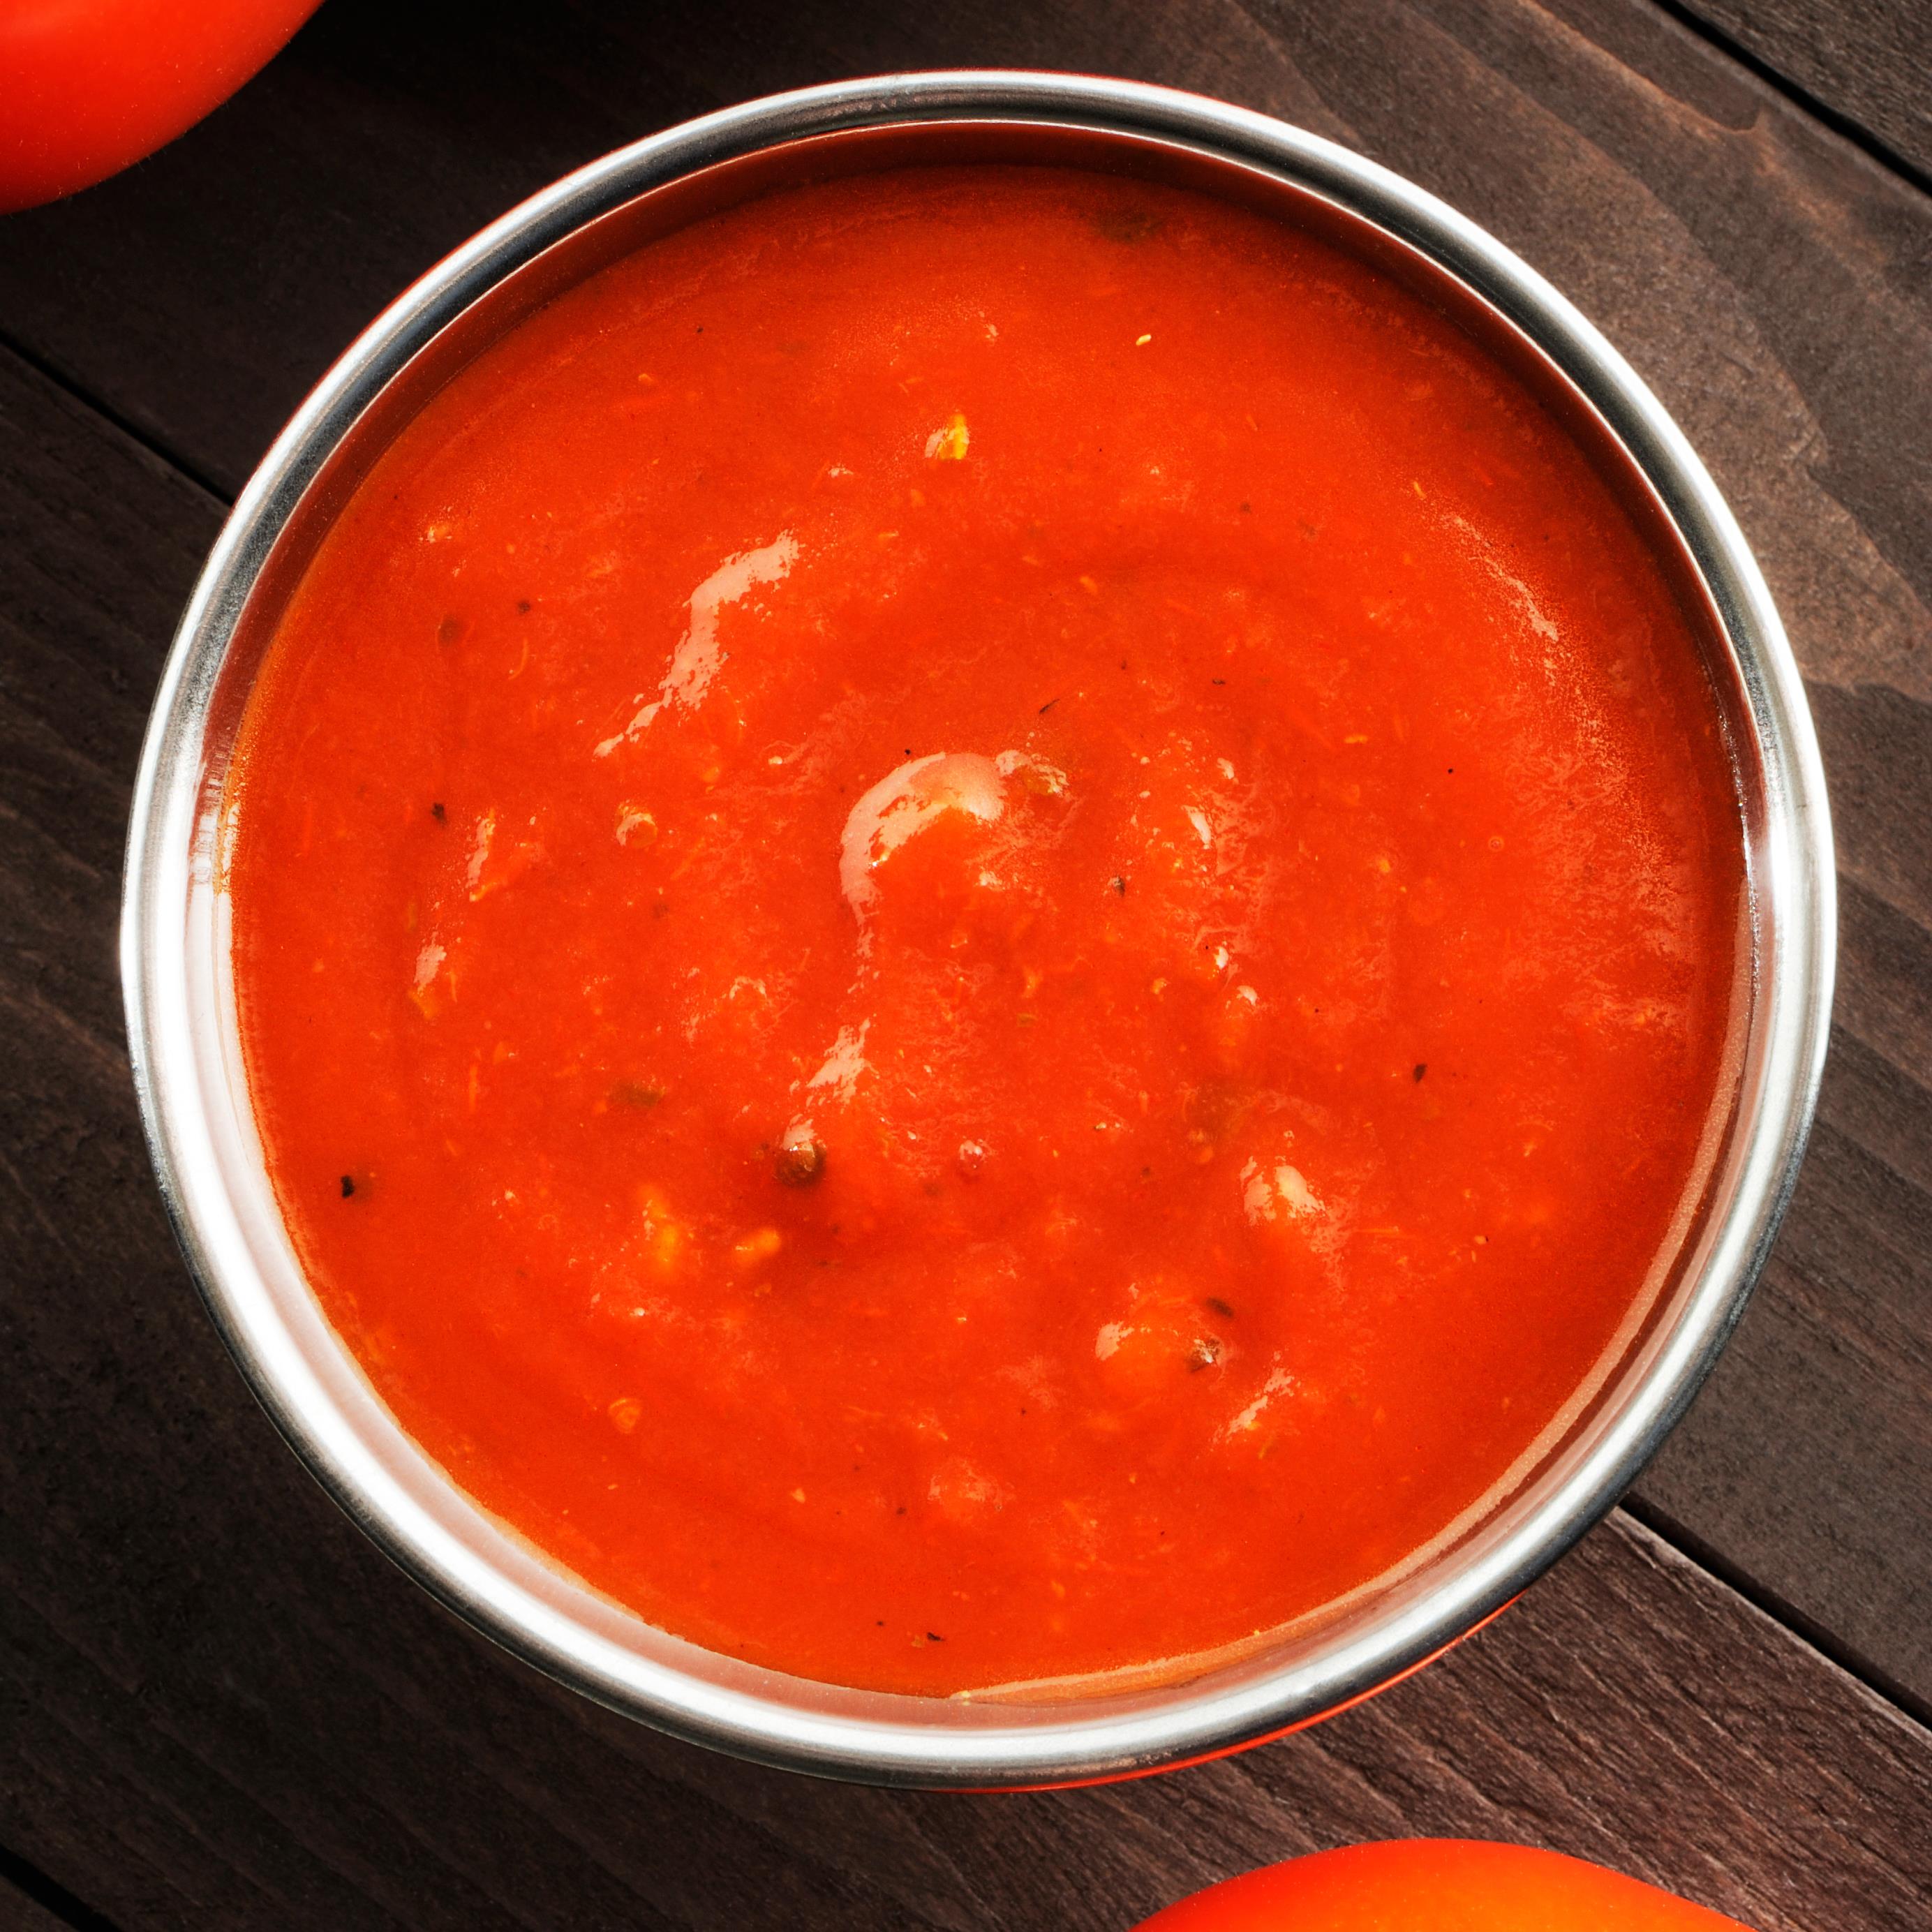 Recette de sauce tomate